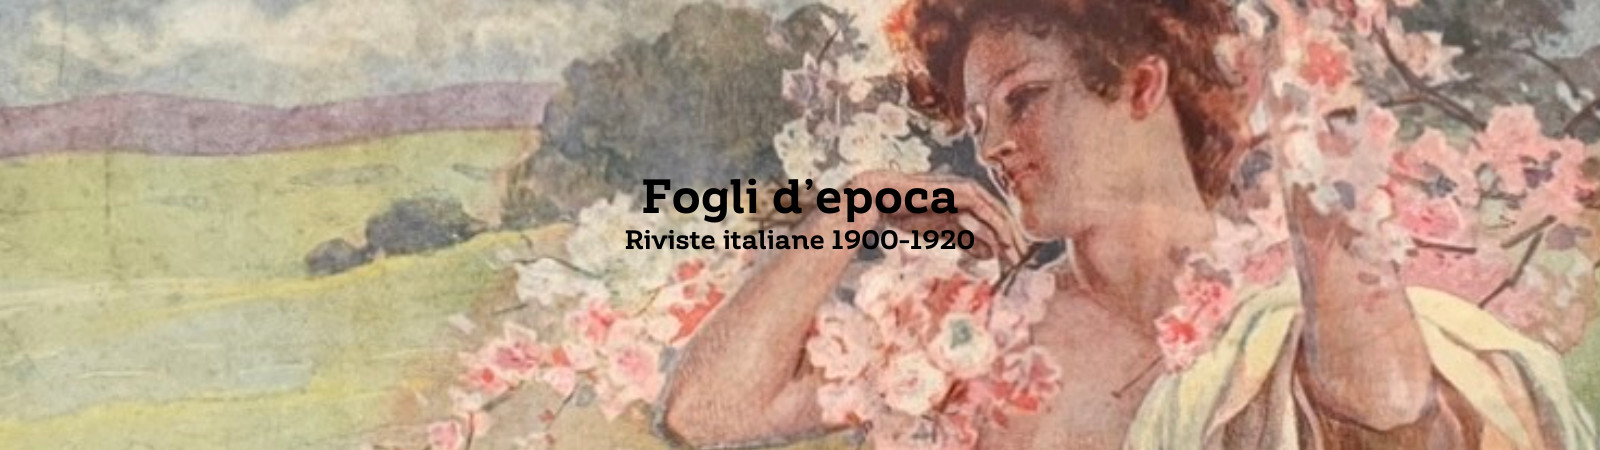 Mostra "Fogli d'epoca. Riviste italiane 1900 - 1920"